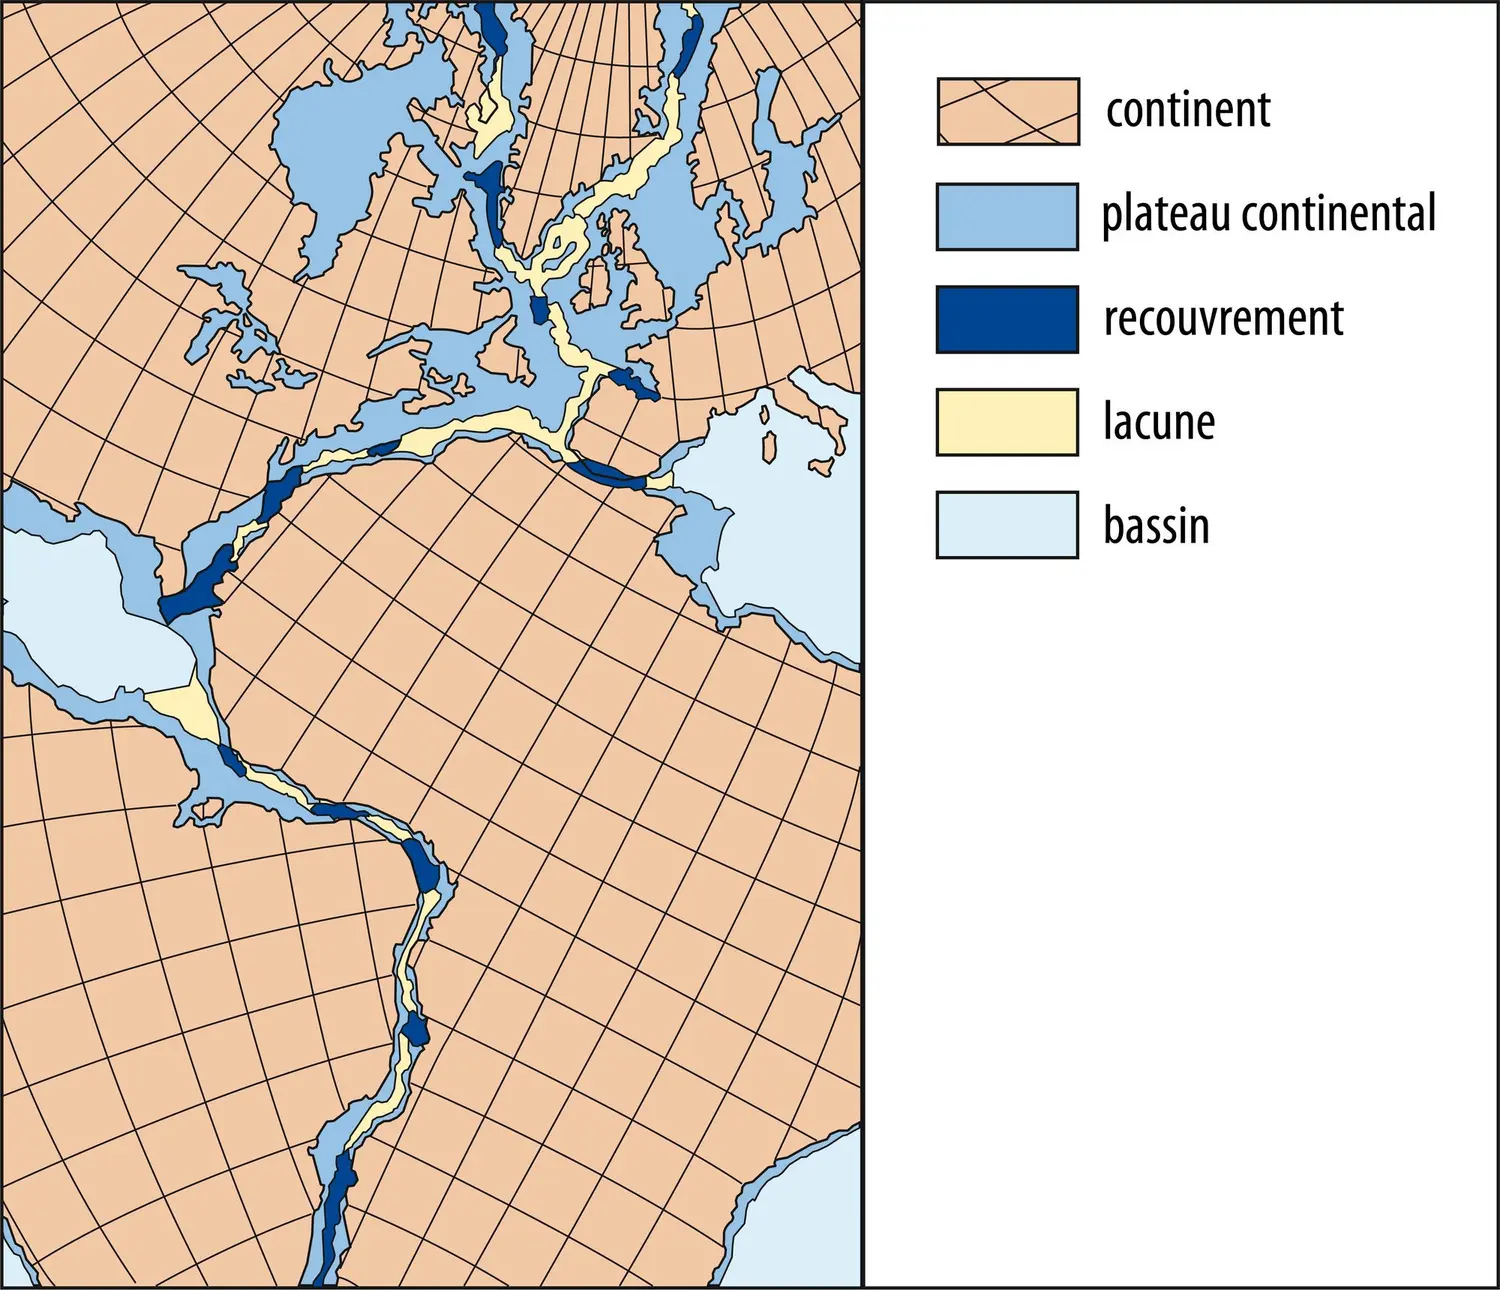 Rassemblement des continents de part et d’autre de l’Atlantique à la fin du Paléozoïque (il y a environ 250 millions d’années)